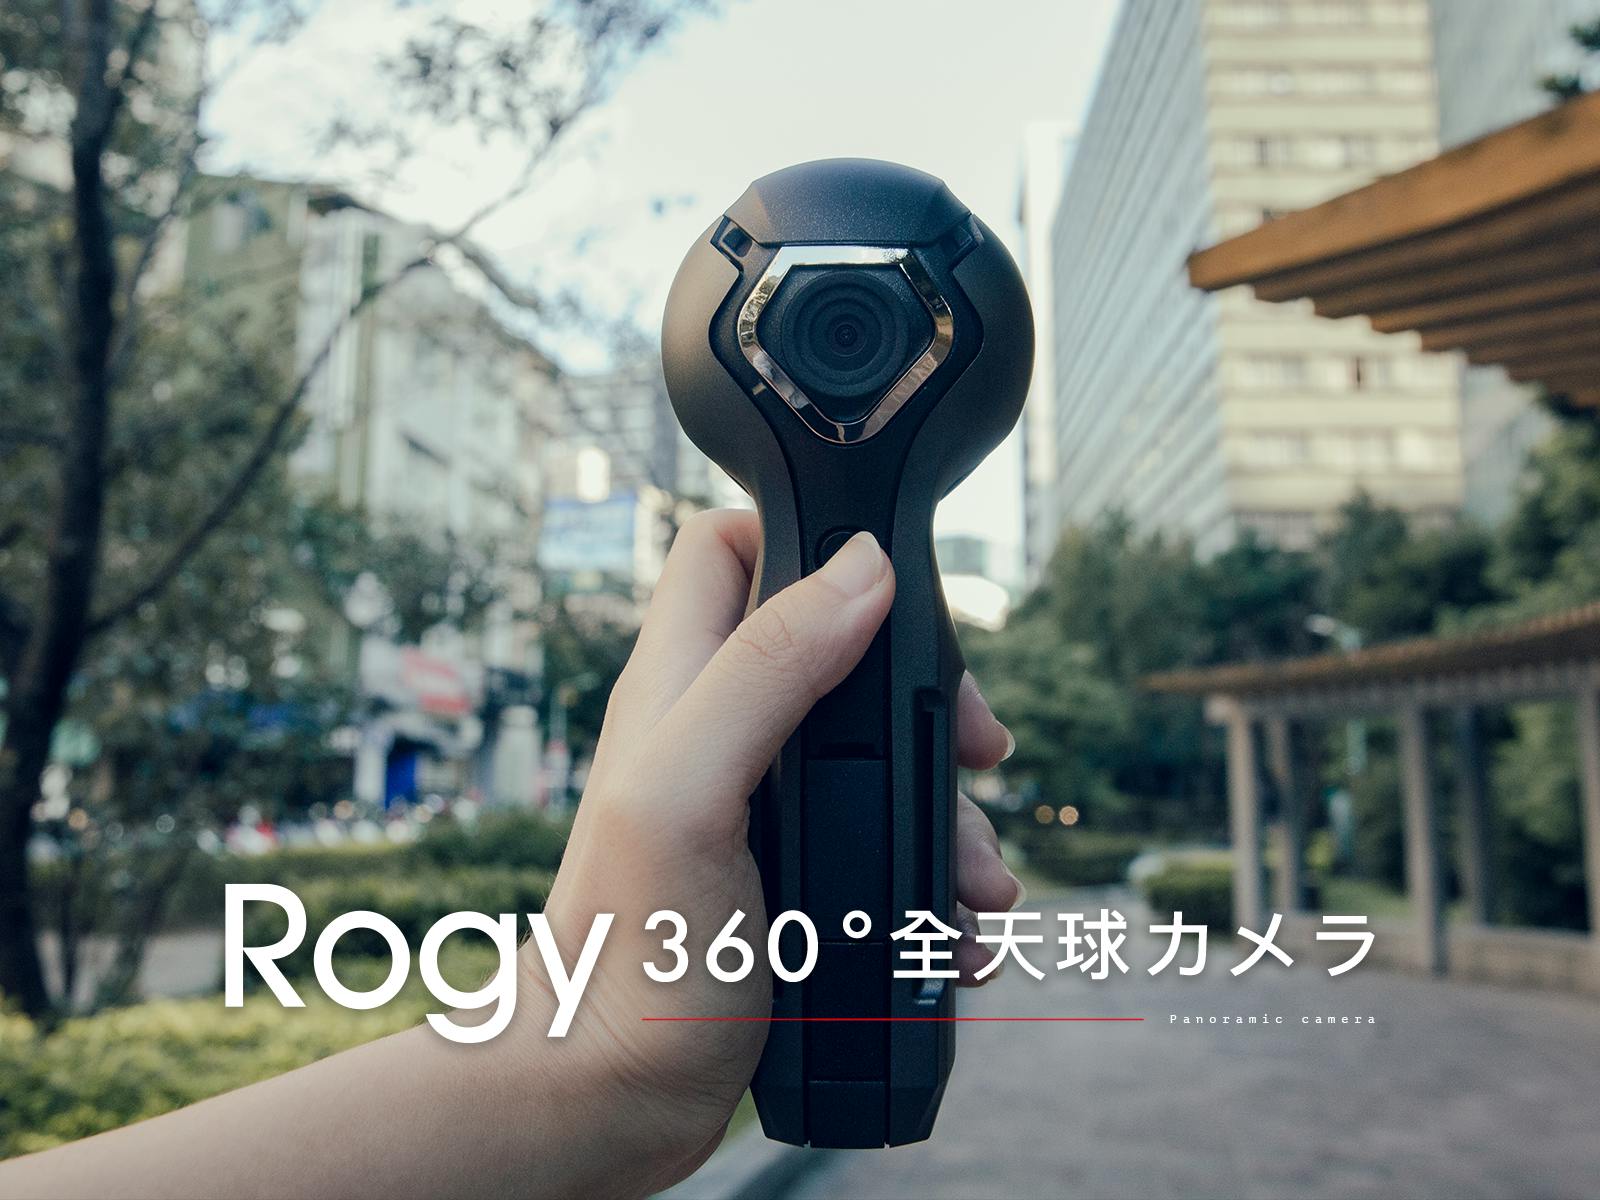 Rogy 360 スマホいらず8時間360度ライブ配信出来る全天球カメラ Campfire キャンプファイヤー